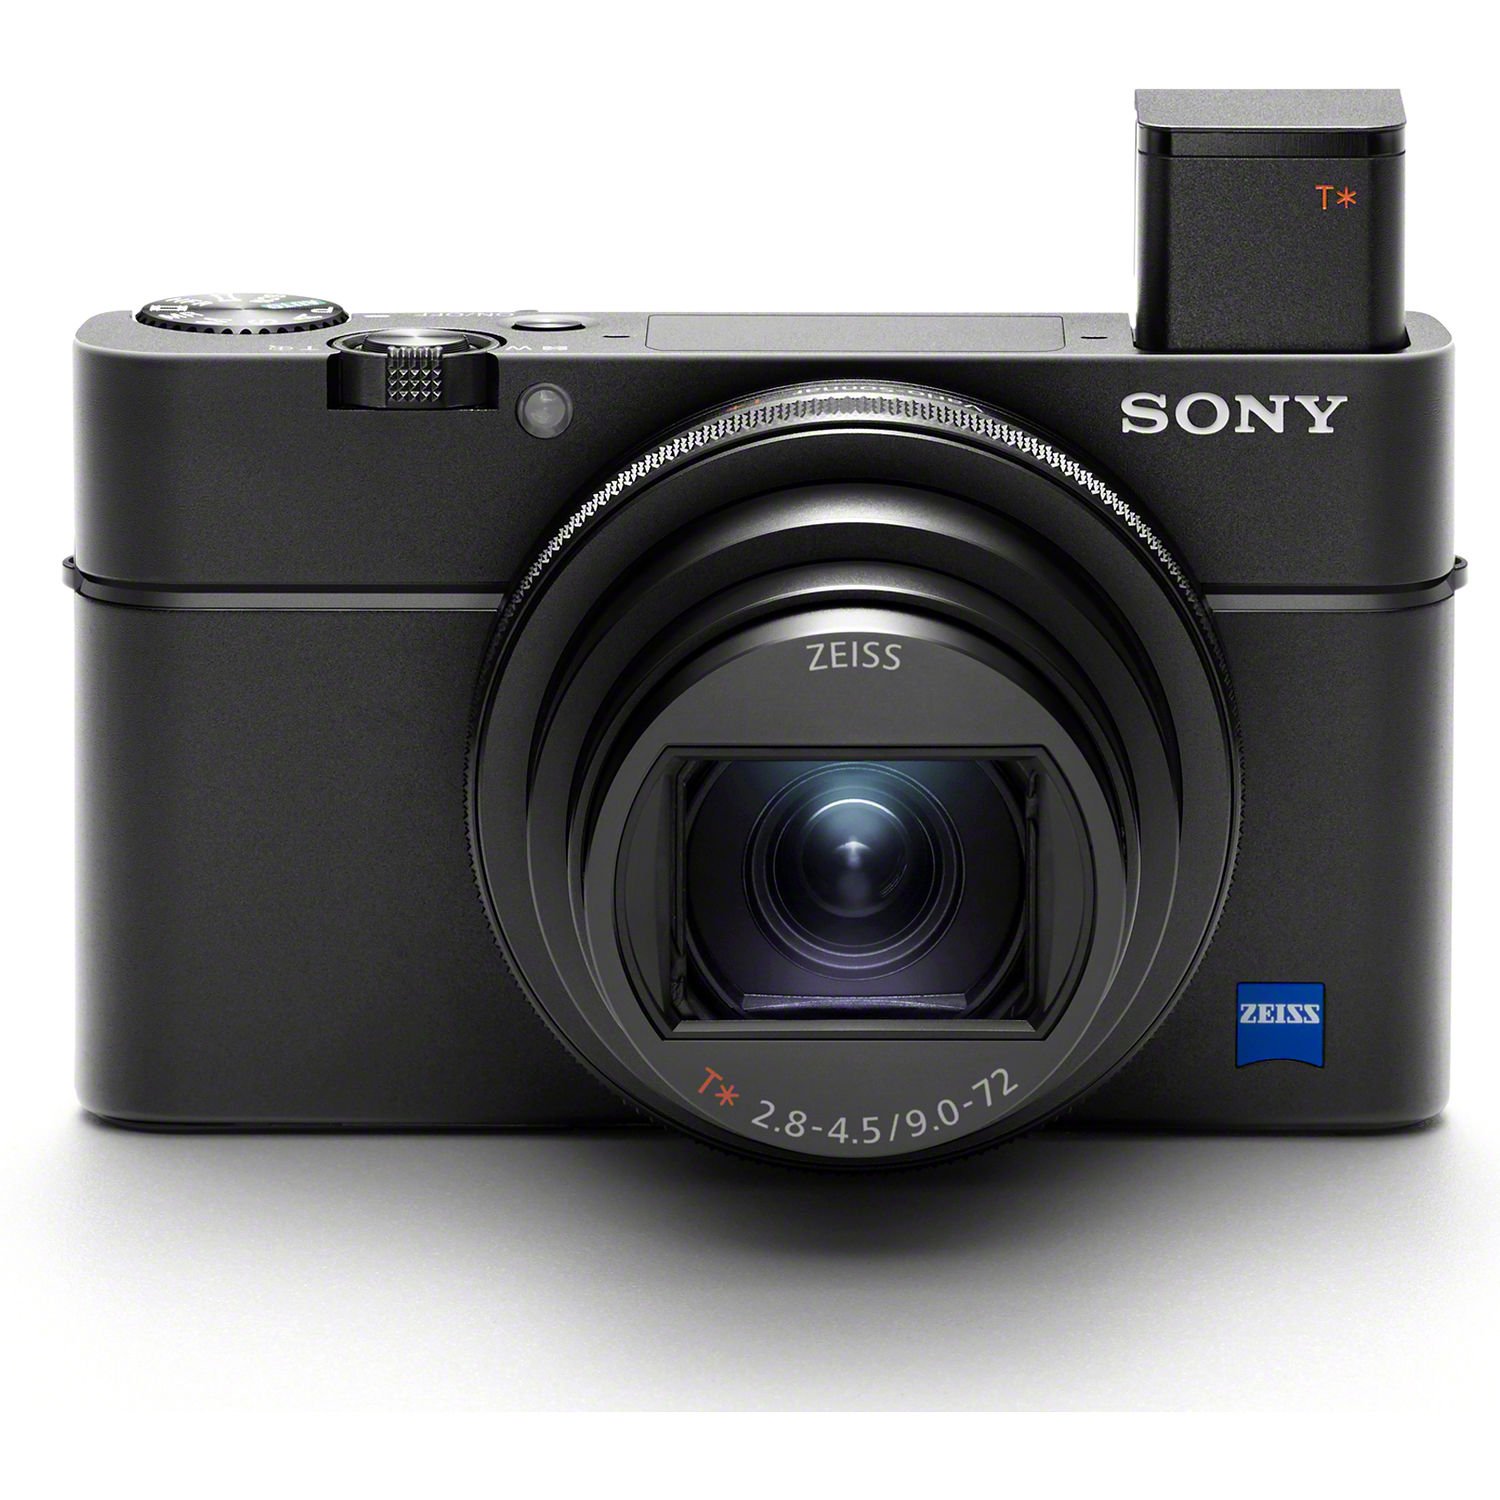 Sony luôn là thương hiệu được ưa chuộng với chất lượng ảnh đẹp và hình ảnh sắc nét. Hình ảnh máy ảnh Sony sẽ khiến bạn đặt tin tưởng với sản phẩm này và muốn tìm hiểu thêm để có thể sở hữu chiếc máy ảnh đẳng cấp của nhà Sony.